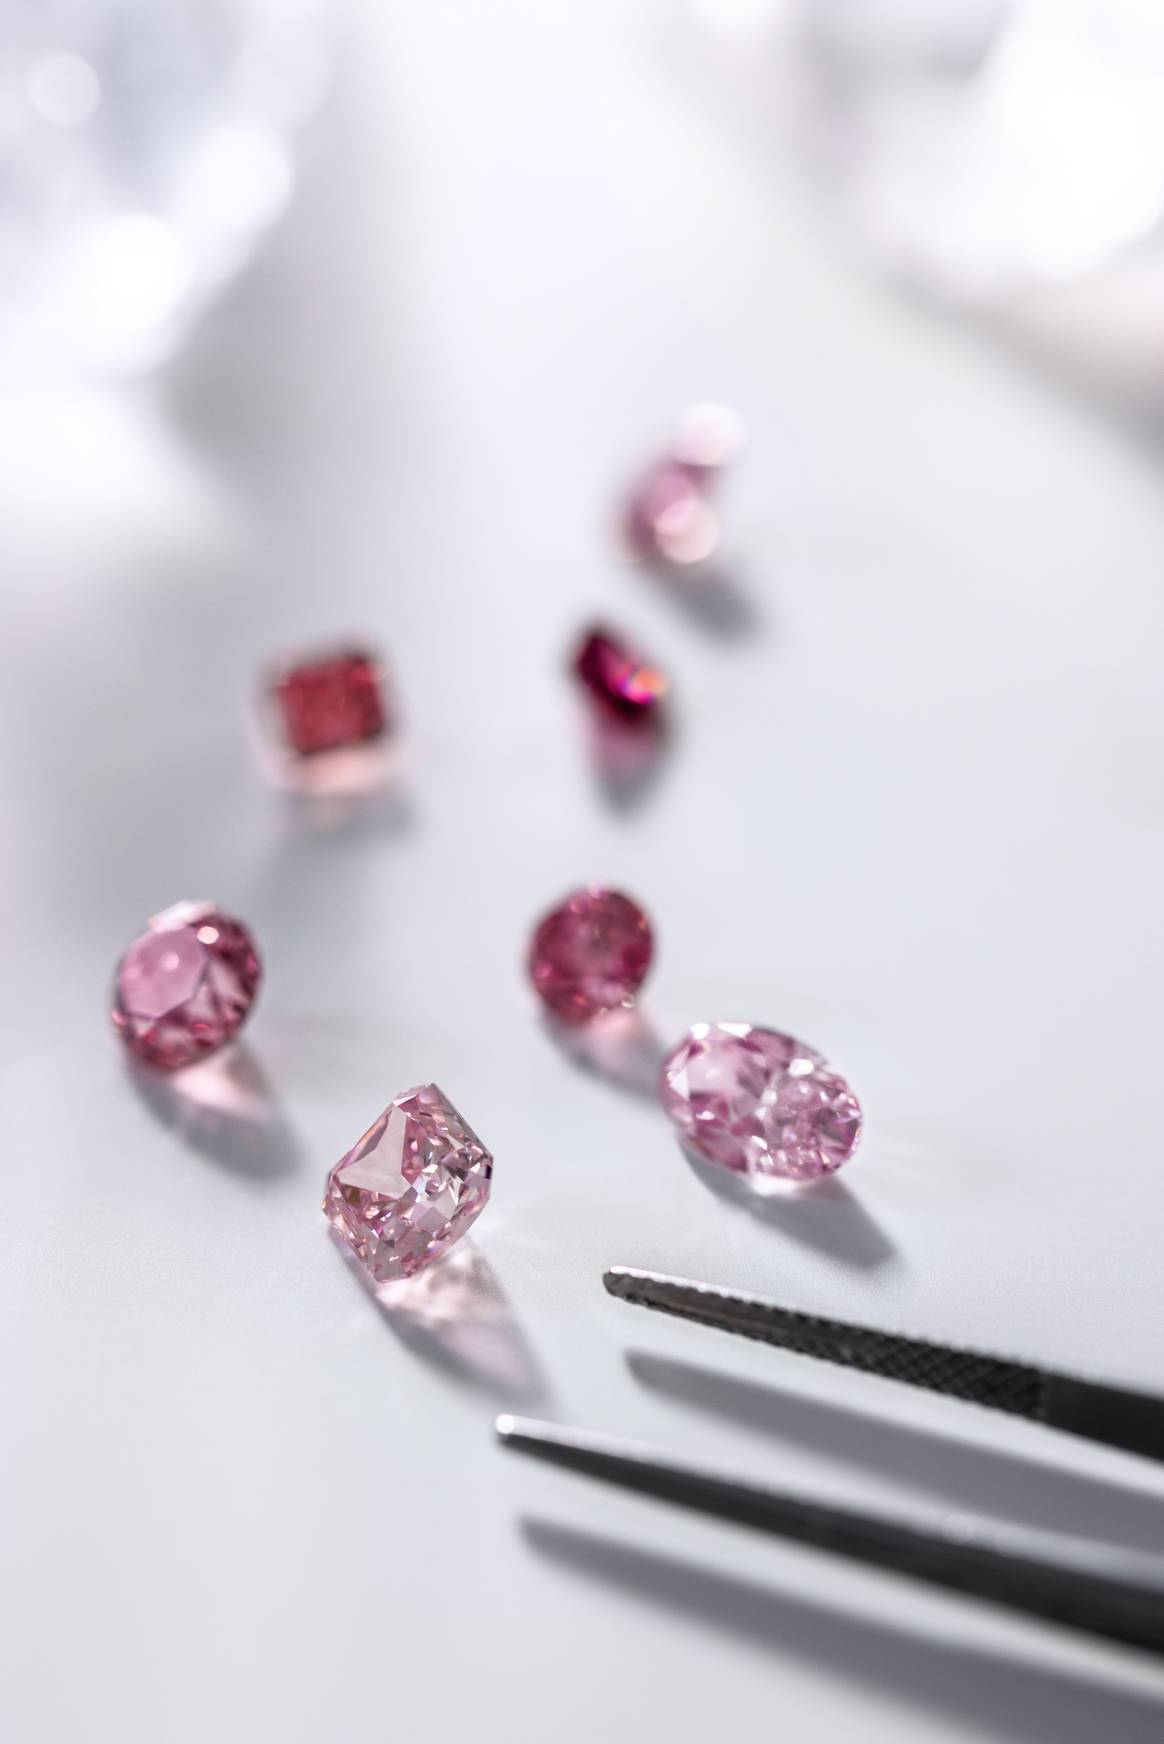 Image: Tiffany & Co.; Argyle Pink diamonds